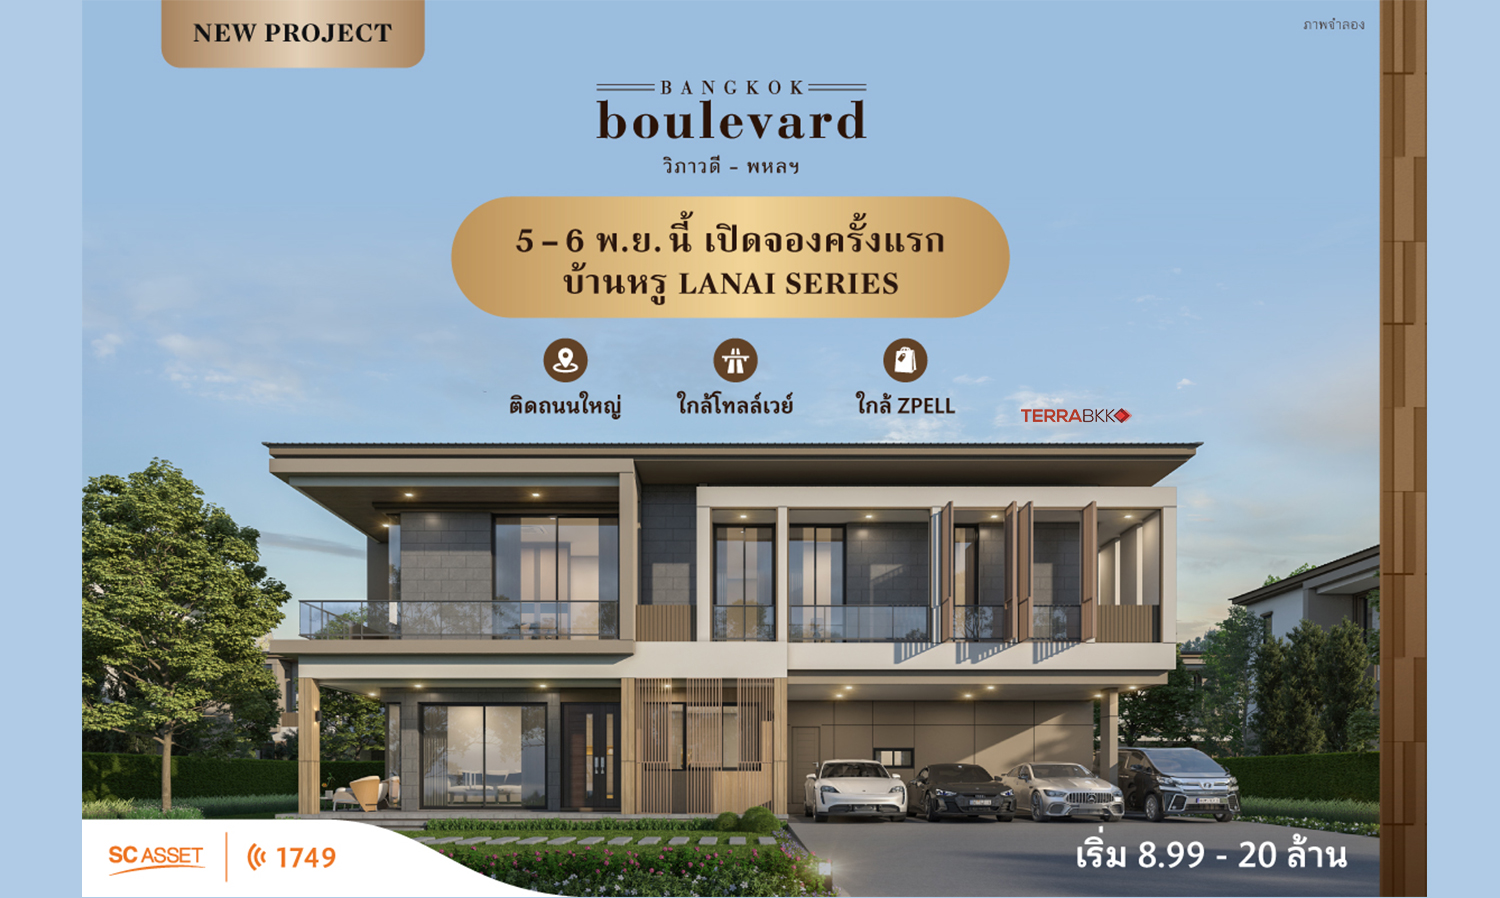 Bangkok Boulevard วิภาวดี-พหลฯ บ้านหรูใกล้ดอนเมืองโทลล์เวย์ เพียง 500 ม. 5-6 พ.ย.นี้ เปิดจองครั้งแรก เริ่ม 8.99 - 20 ล้าน